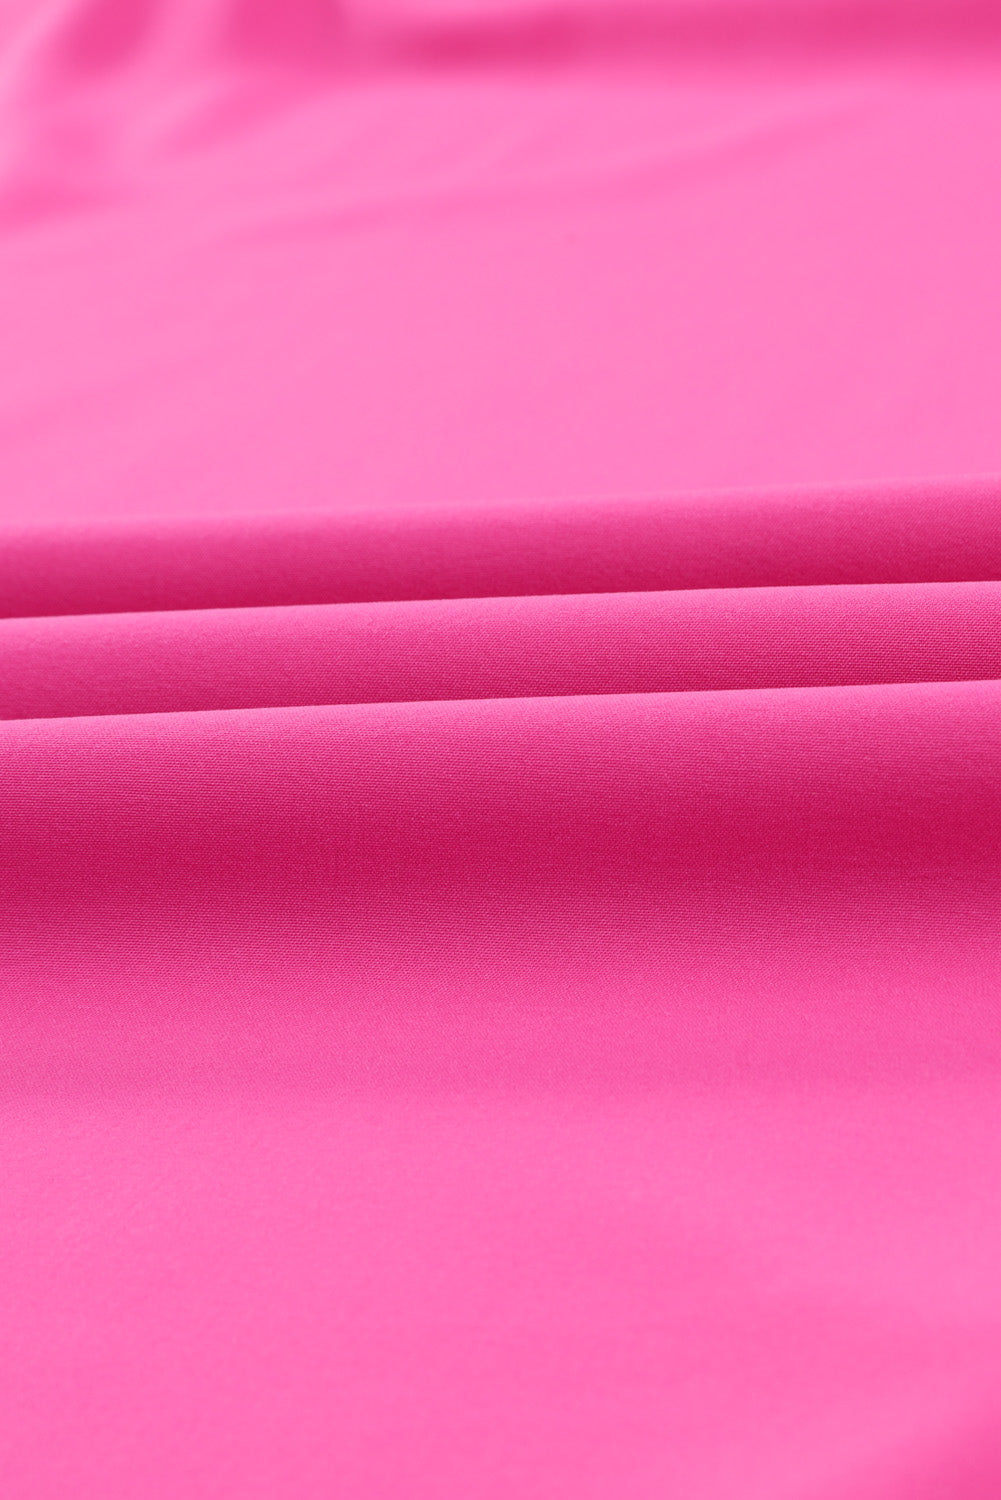 Mini abito rosa con maniche volant taglie forti